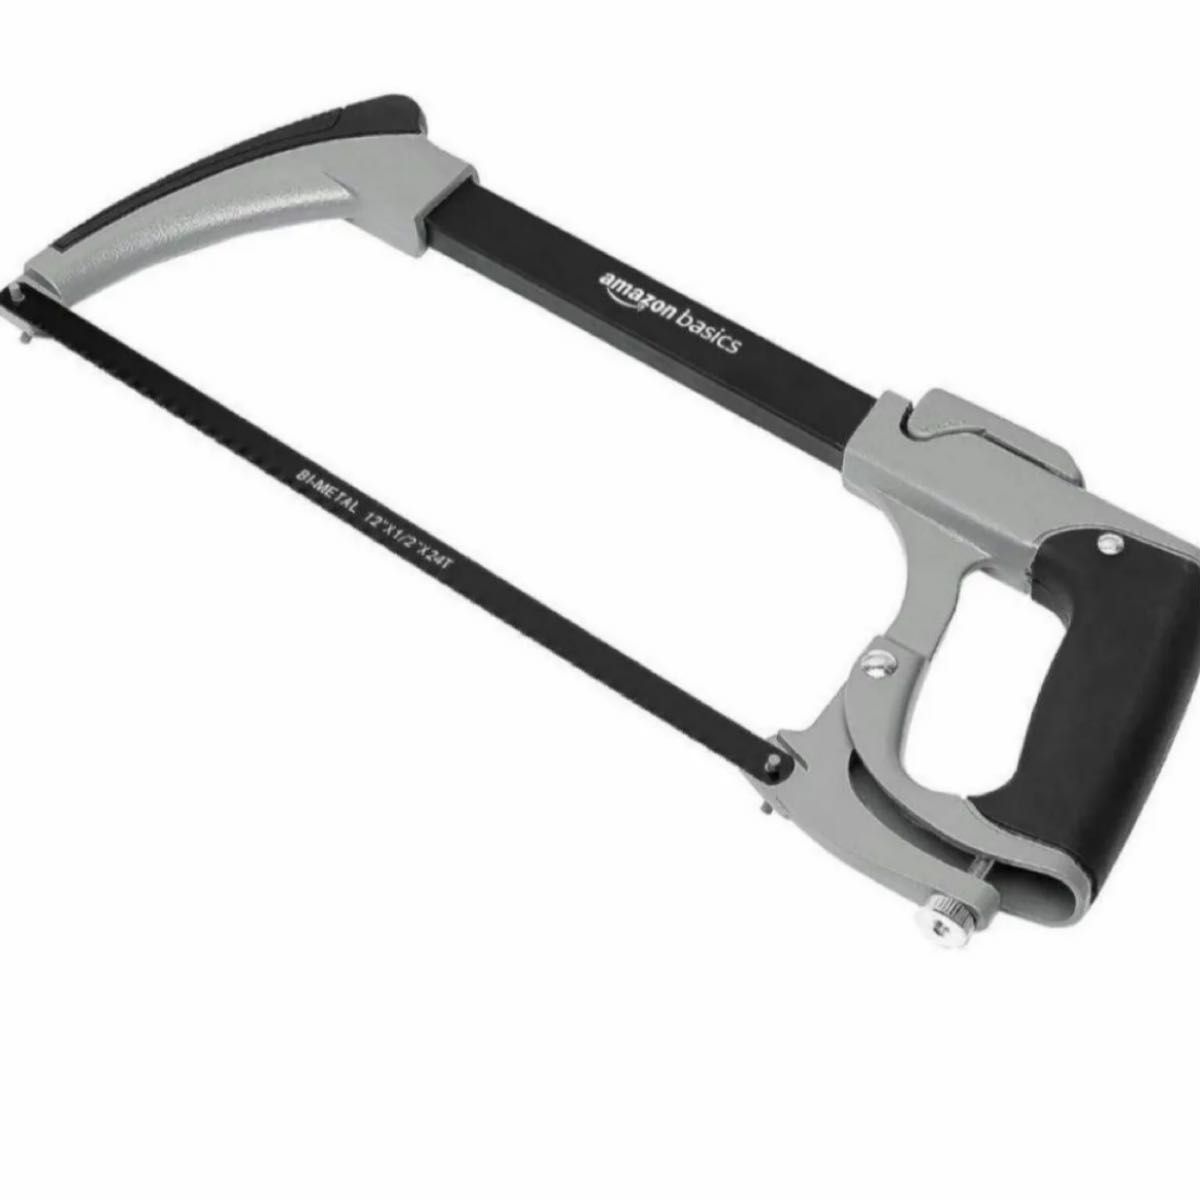 クイックリリースアルミニウム バイメタルハックソーブレード 弓のこ 切削工具 ノコギリ 弓型